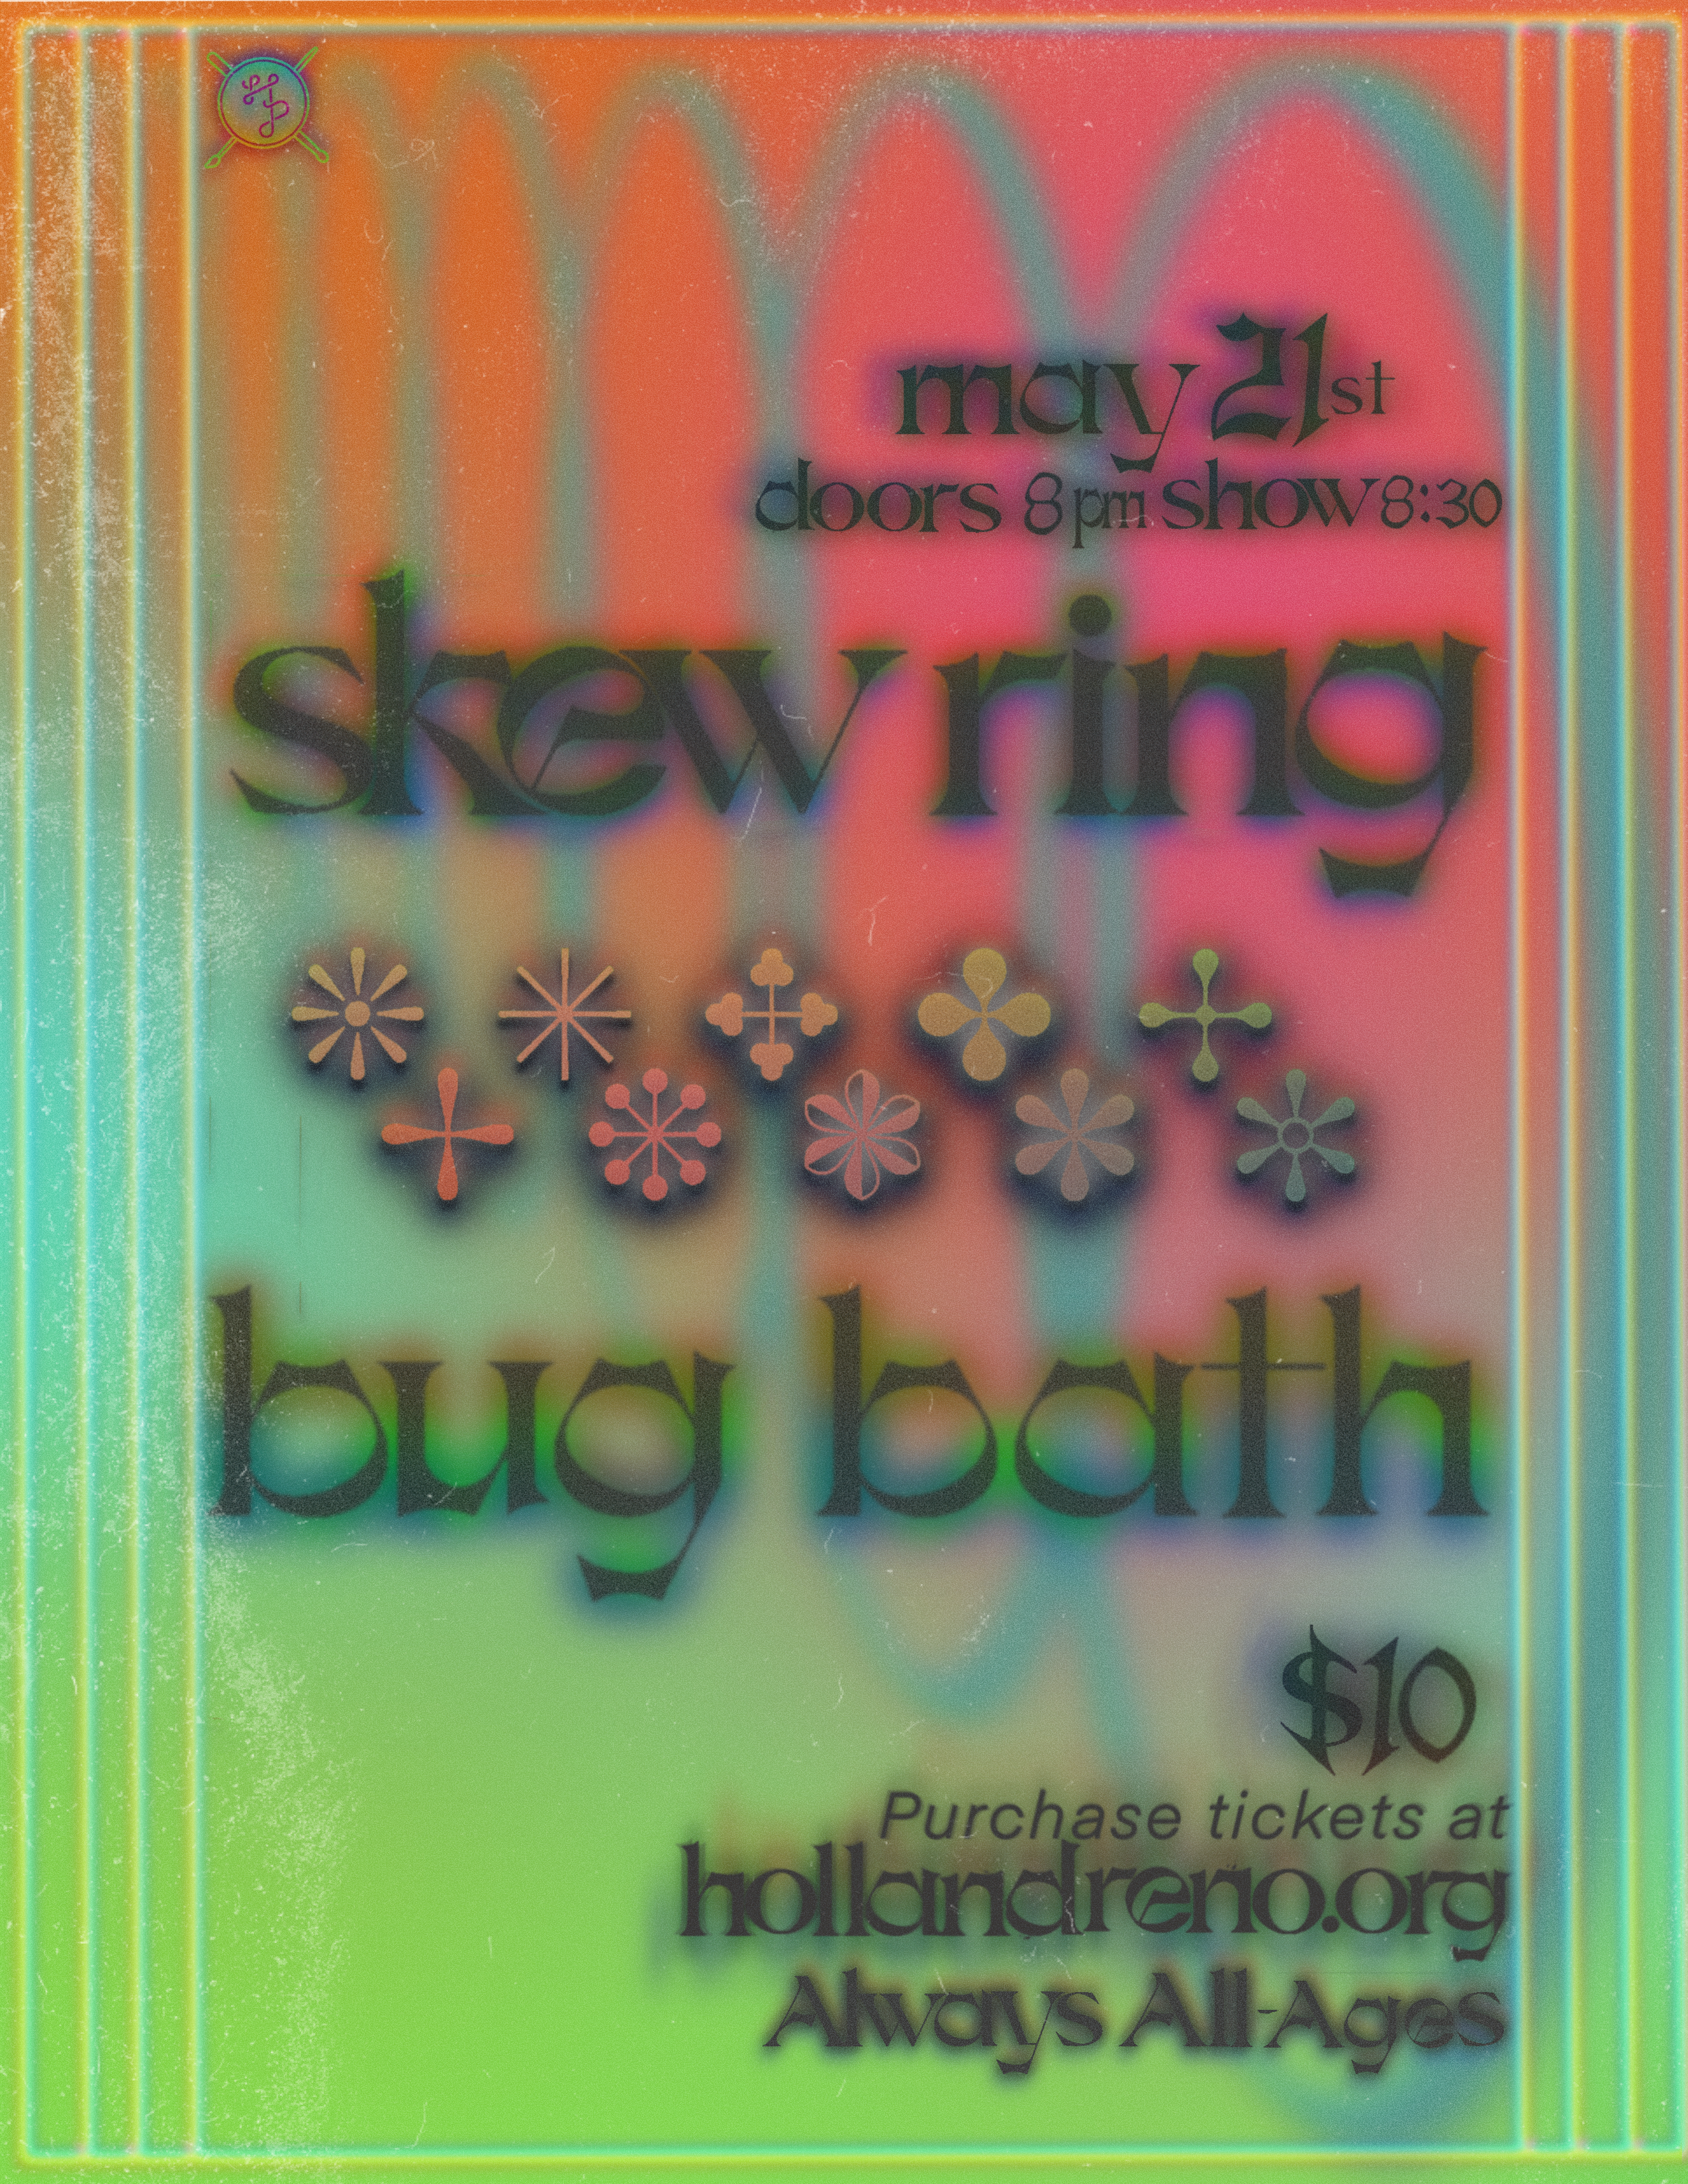 Holland Lounge: Skew Ring w/ Bug Bath